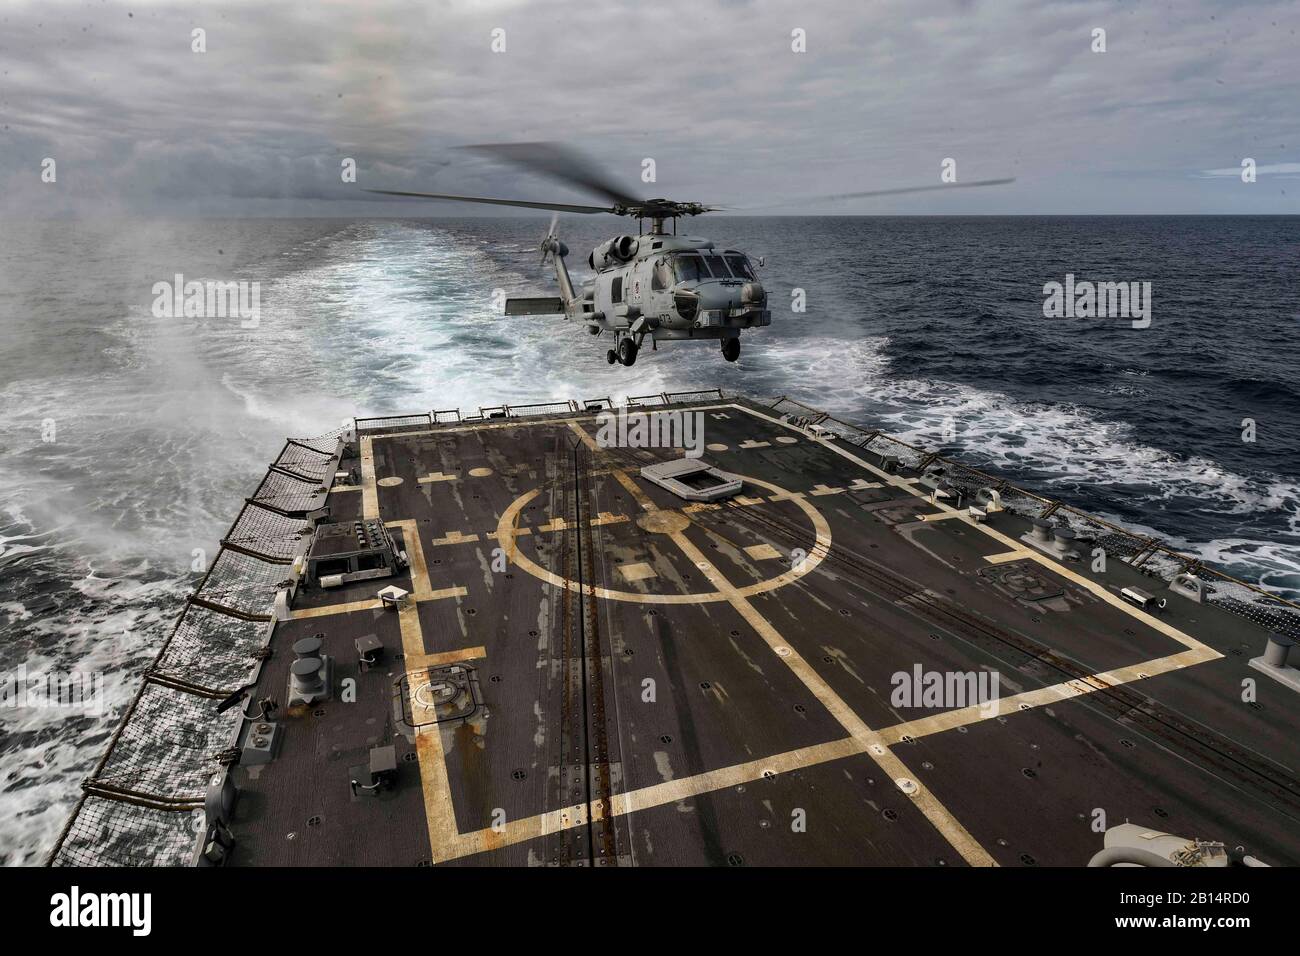 Marina MH-60R Sea Hawk helicóptero, asignado al escuadrón de helicópteros huelga Marítima (HSM) 46, Det. 1, aterriza en la cubierta de vuelo de la clase Arleigh Burke de misiles guiados destructor USS Oscar Austin (DDG 79) en el Océano Atlántico, el 26 de agosto de 2017. Oscar Austin es un despliegue de rutina apoyando los intereses de seguridad nacional de EE.UU. en Europa, el teatro y el aumento de la cooperación en materia de seguridad y la presencia naval de avance en los EE.UU. 6ª Flota de la zona de operaciones. (Ee.Uu. Navy photo by Mass Communication Specialist 2nd Class Ryan U. Kledzik) Foto de stock